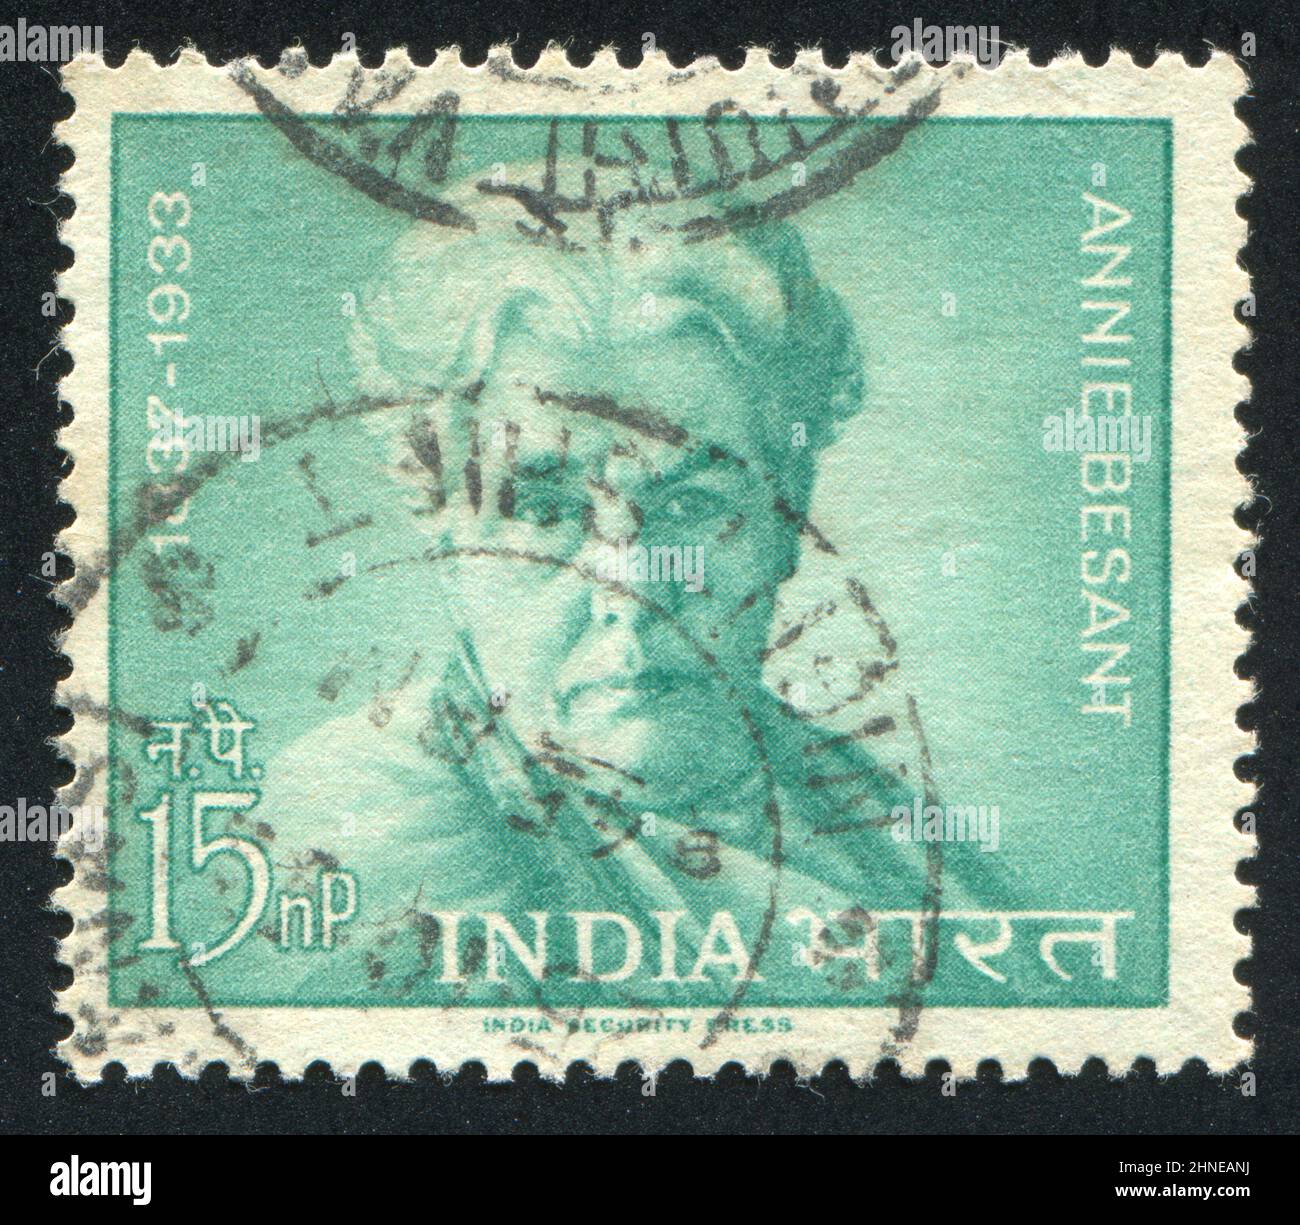 INDE - VERS 1963: Timbre imprimé par l'Inde, montre Annie Besant, vers 1963 Banque D'Images